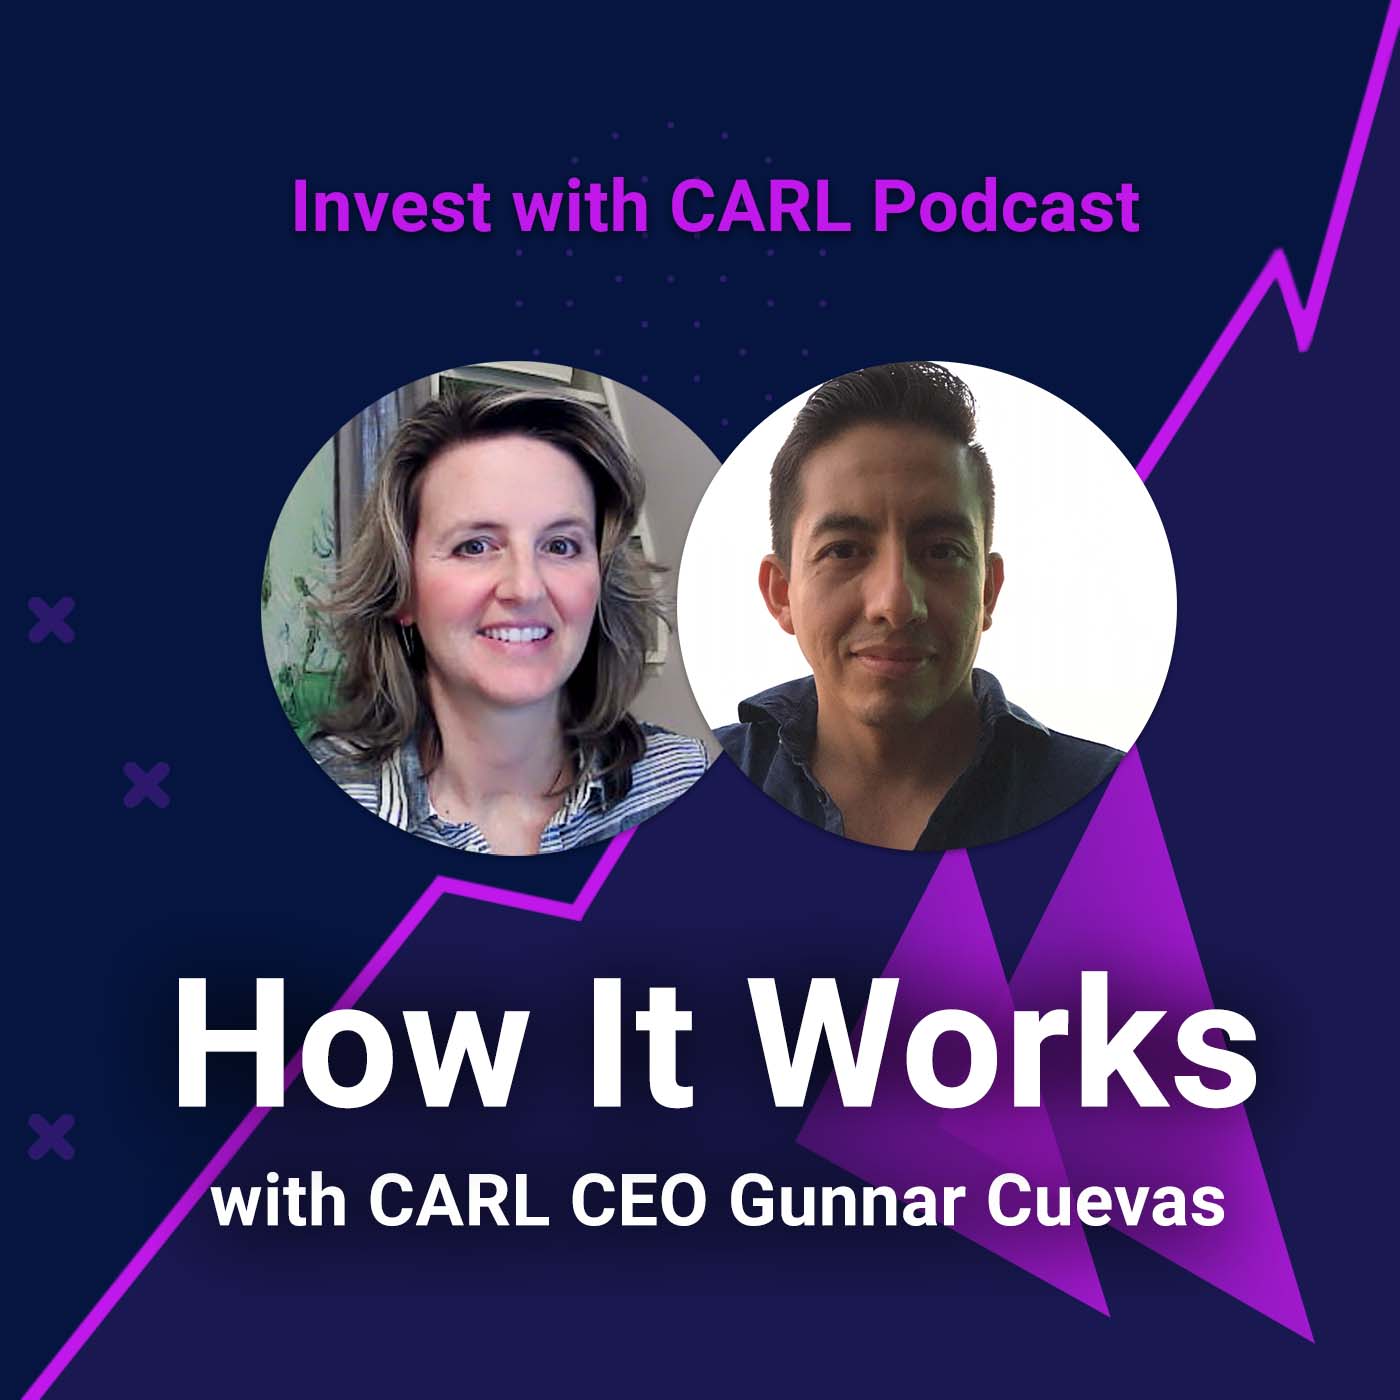 How it Works with CARL CEO, Gunnar Cuevas